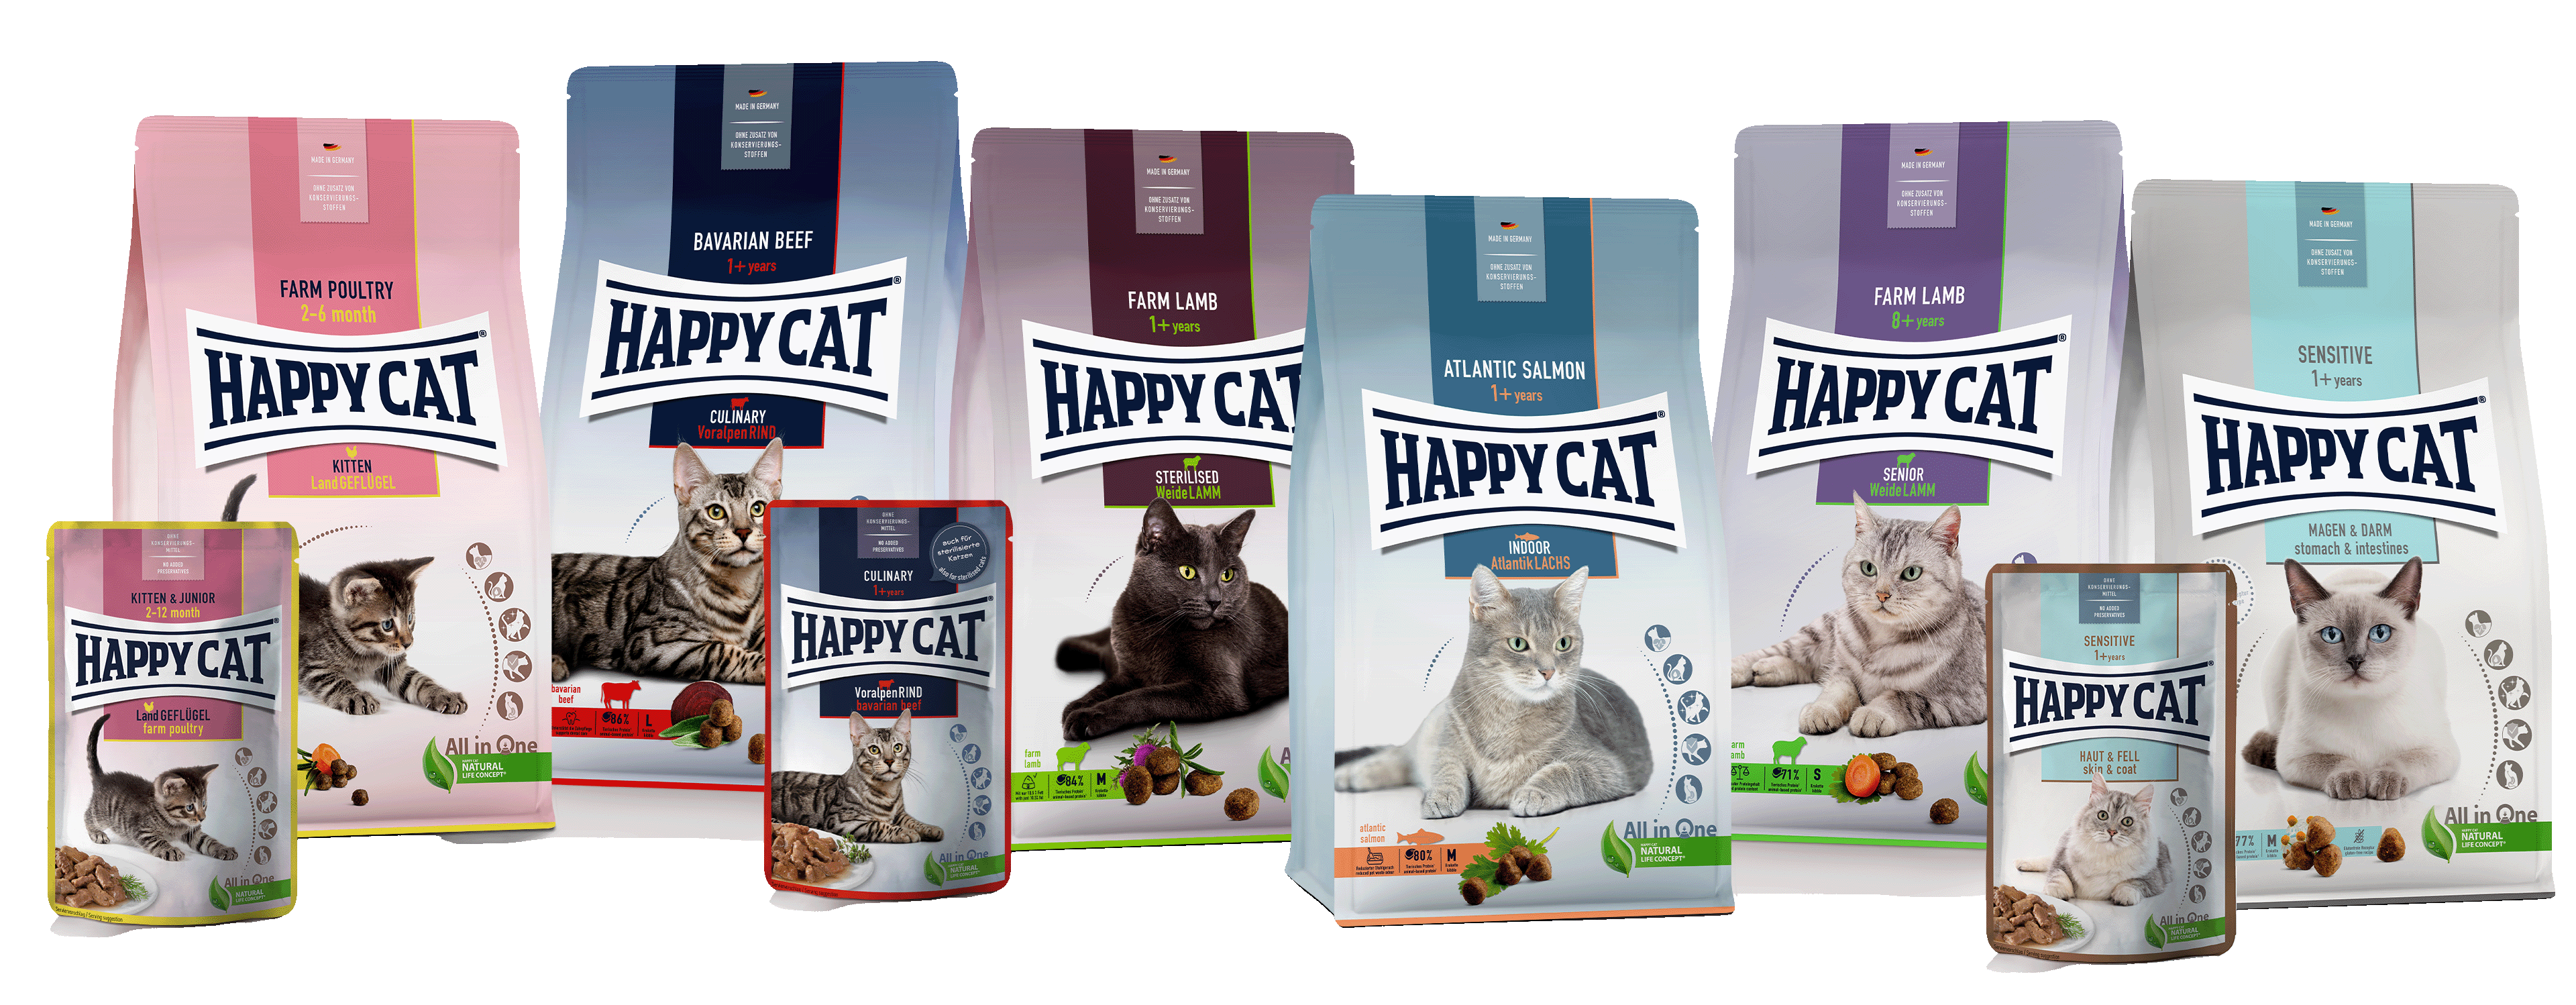 Bunte Produktvielfalt an Happy Cat Futter